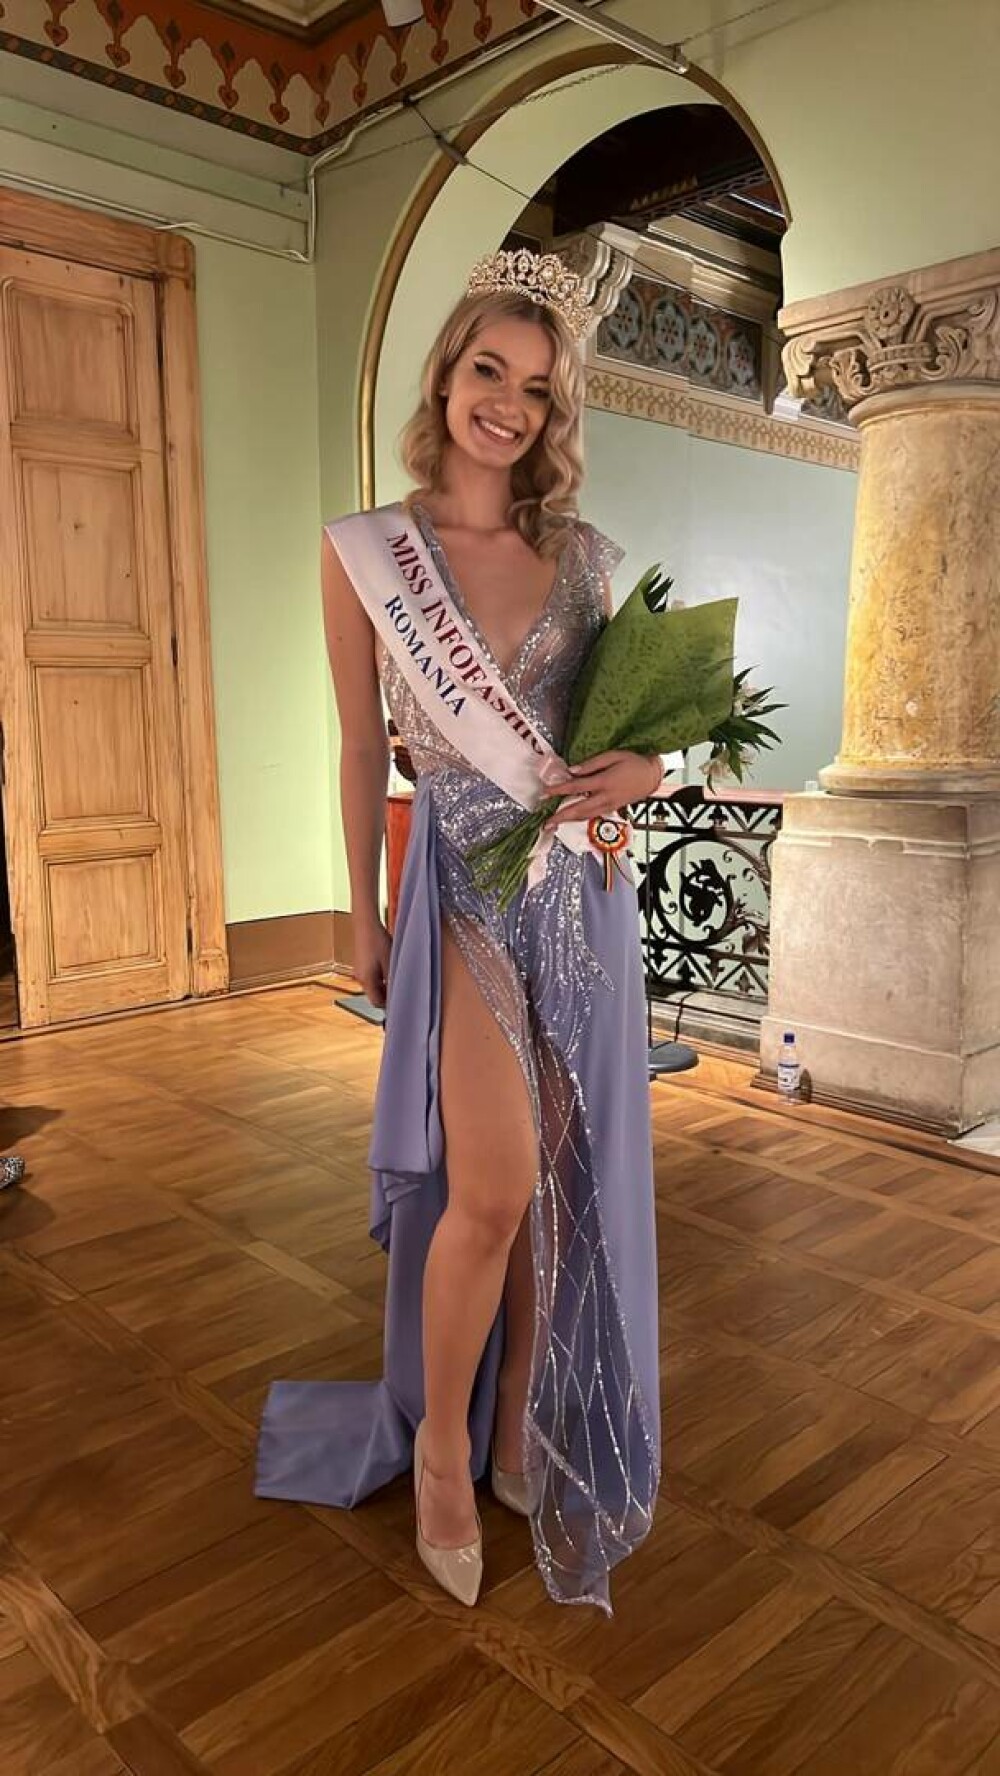 Fiica unui cunoscut politician va reprezenta România la un important concurs de miss. ”Cu bucurie și onoare” GALERIE FOTO - Imaginea 3